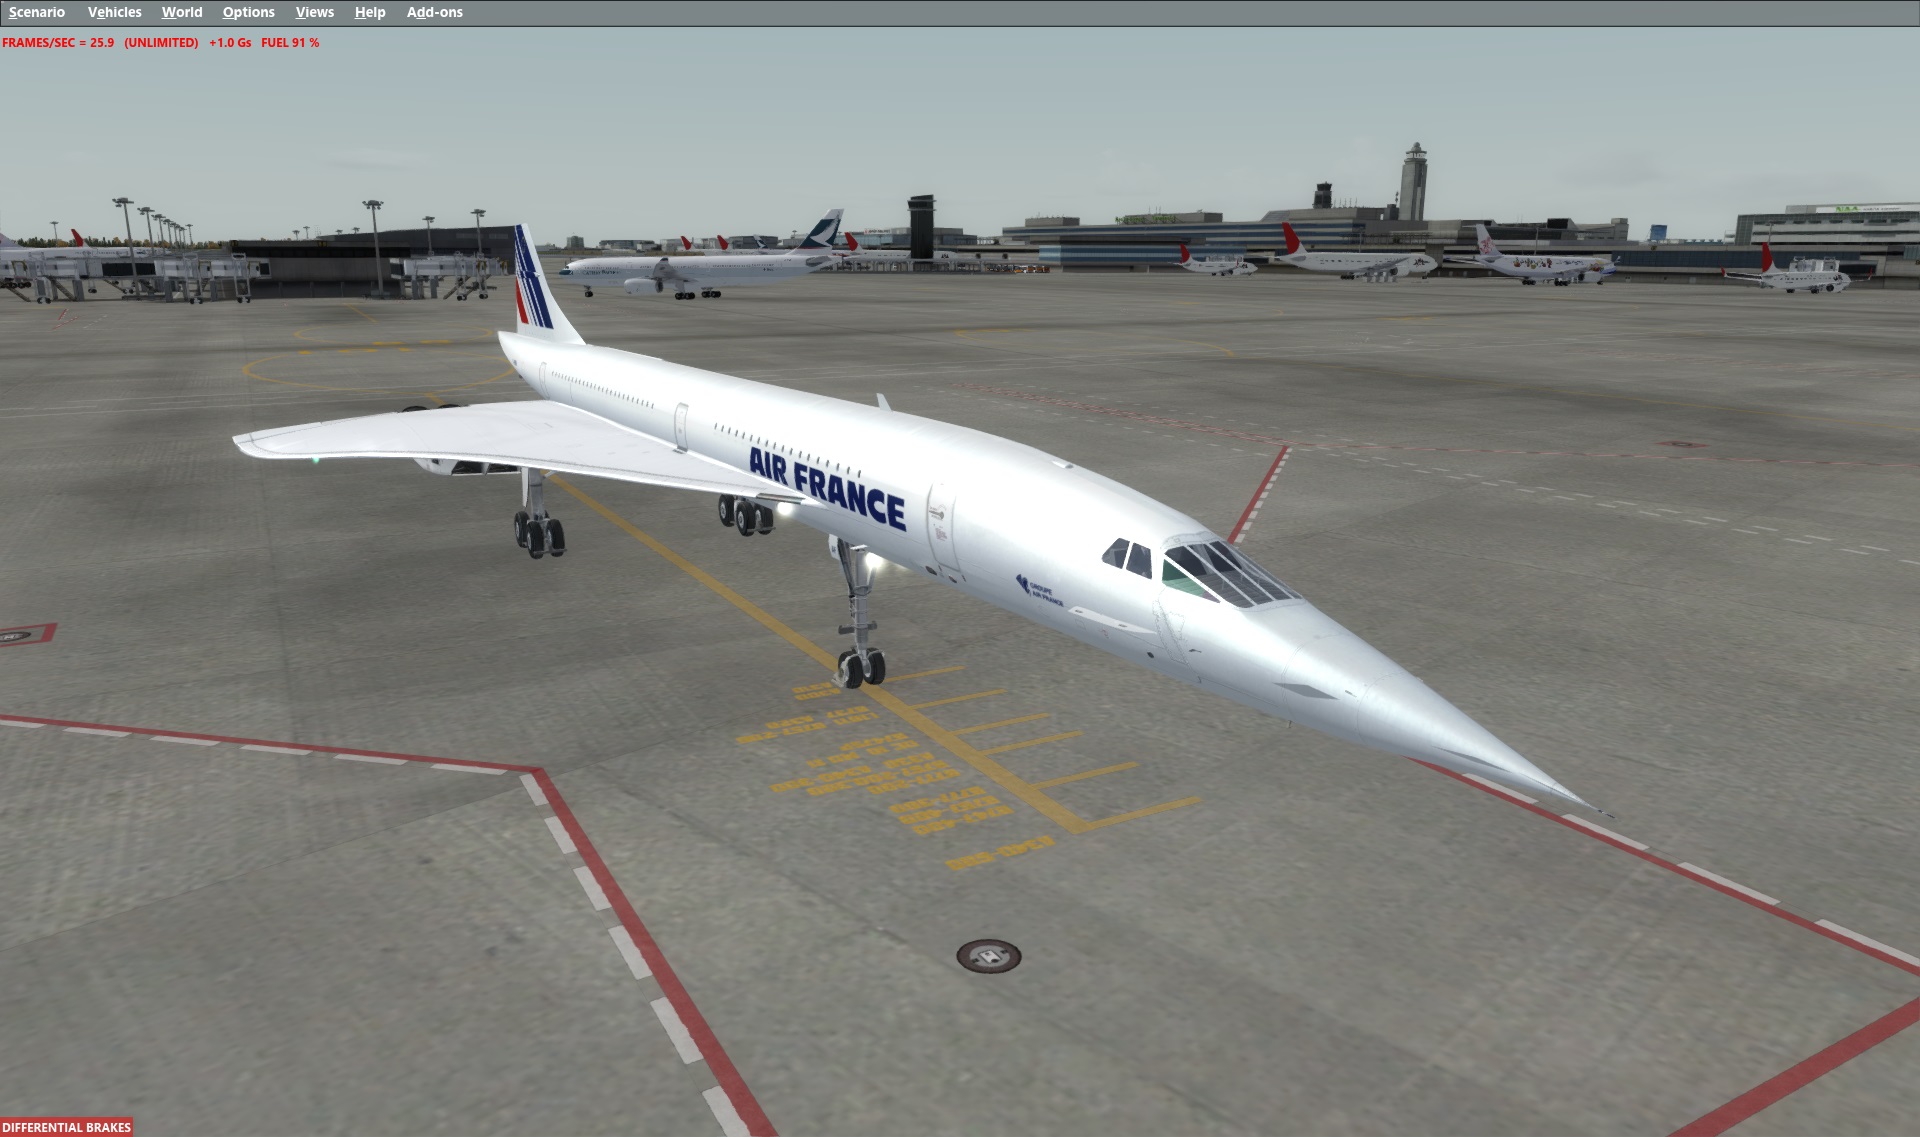 新品 Concorde X (FSX) コンコルド アドオンソフト